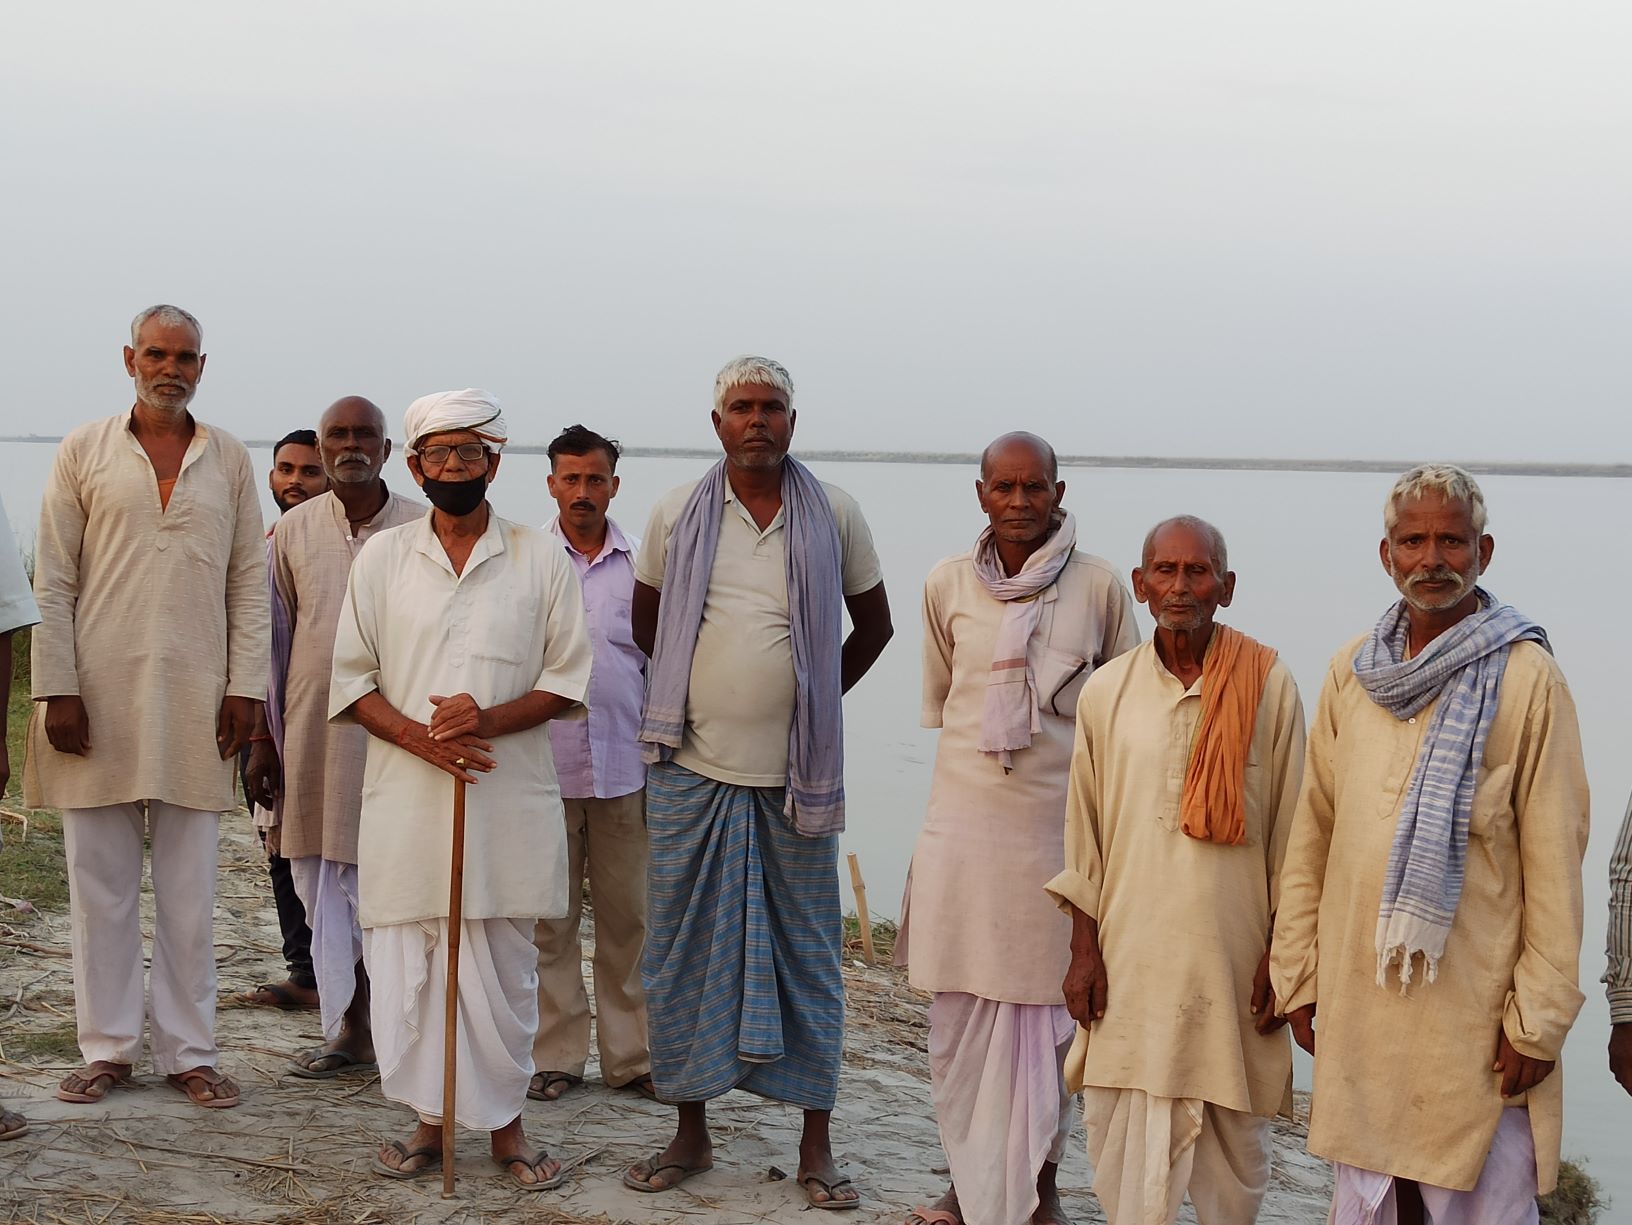 गंडक नदी के किनारे नाव का इंतजार करते धूमनगर गांव के लोग. (सभी फोटो: मनोज सिंह)